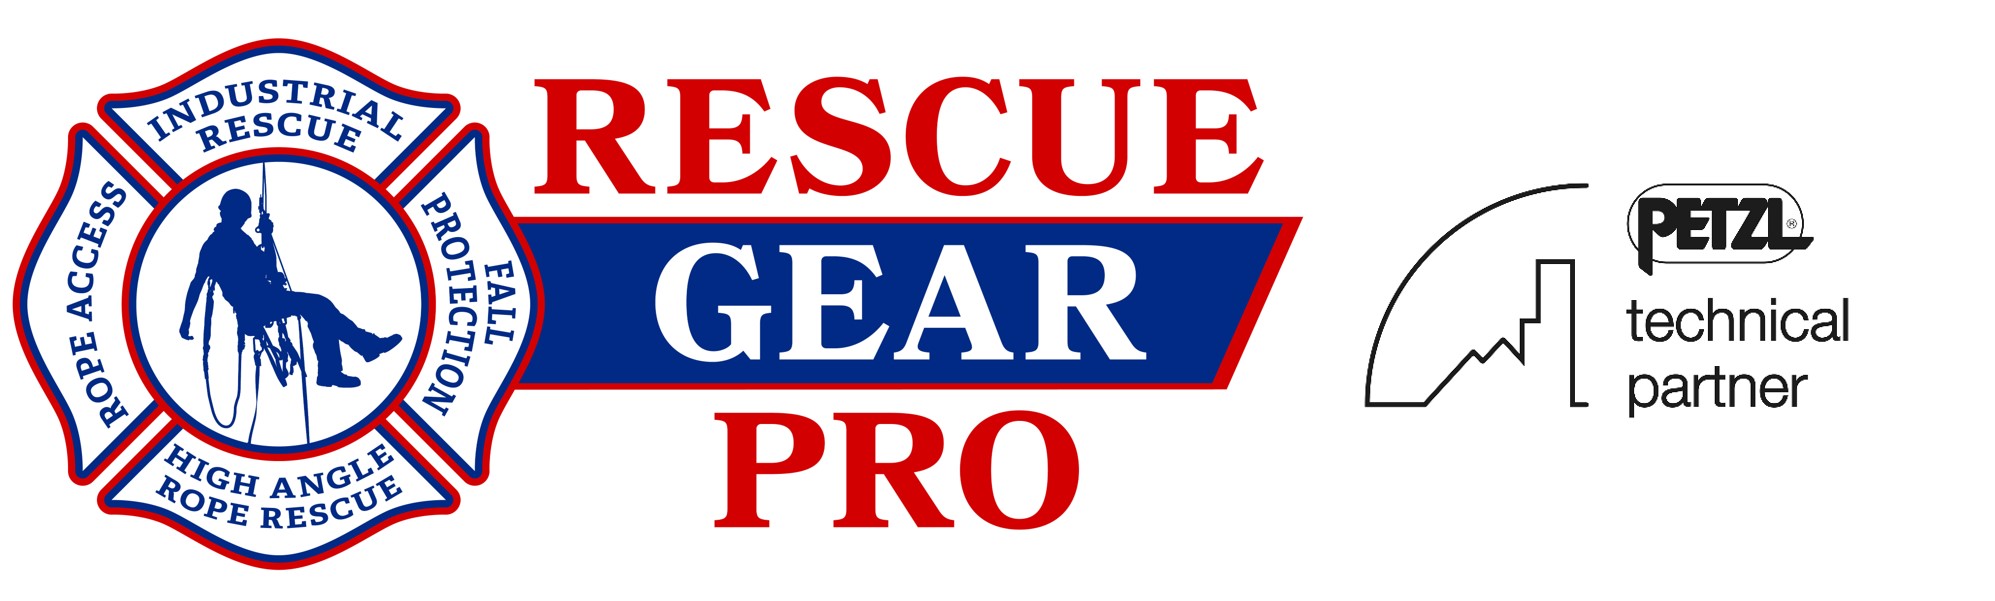 RescueGearPro - Industrial Emergency Response Equipment – Rescuegearpro